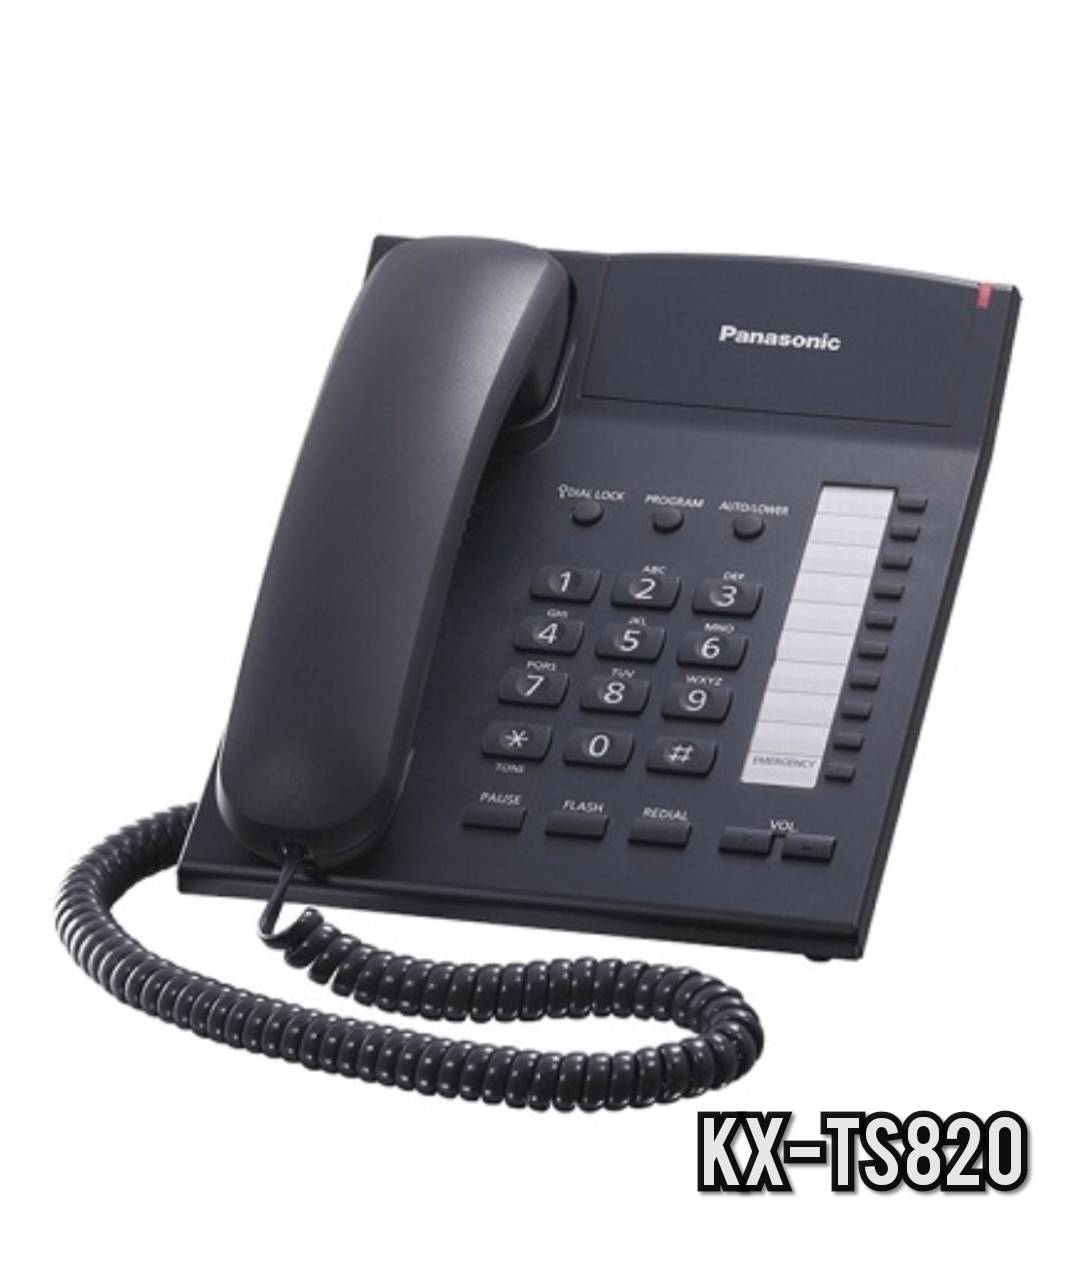 โทรศัพท์บ้าน ออฟฟิต PanasonicKX-TS820MX สีขาว/สีดำ